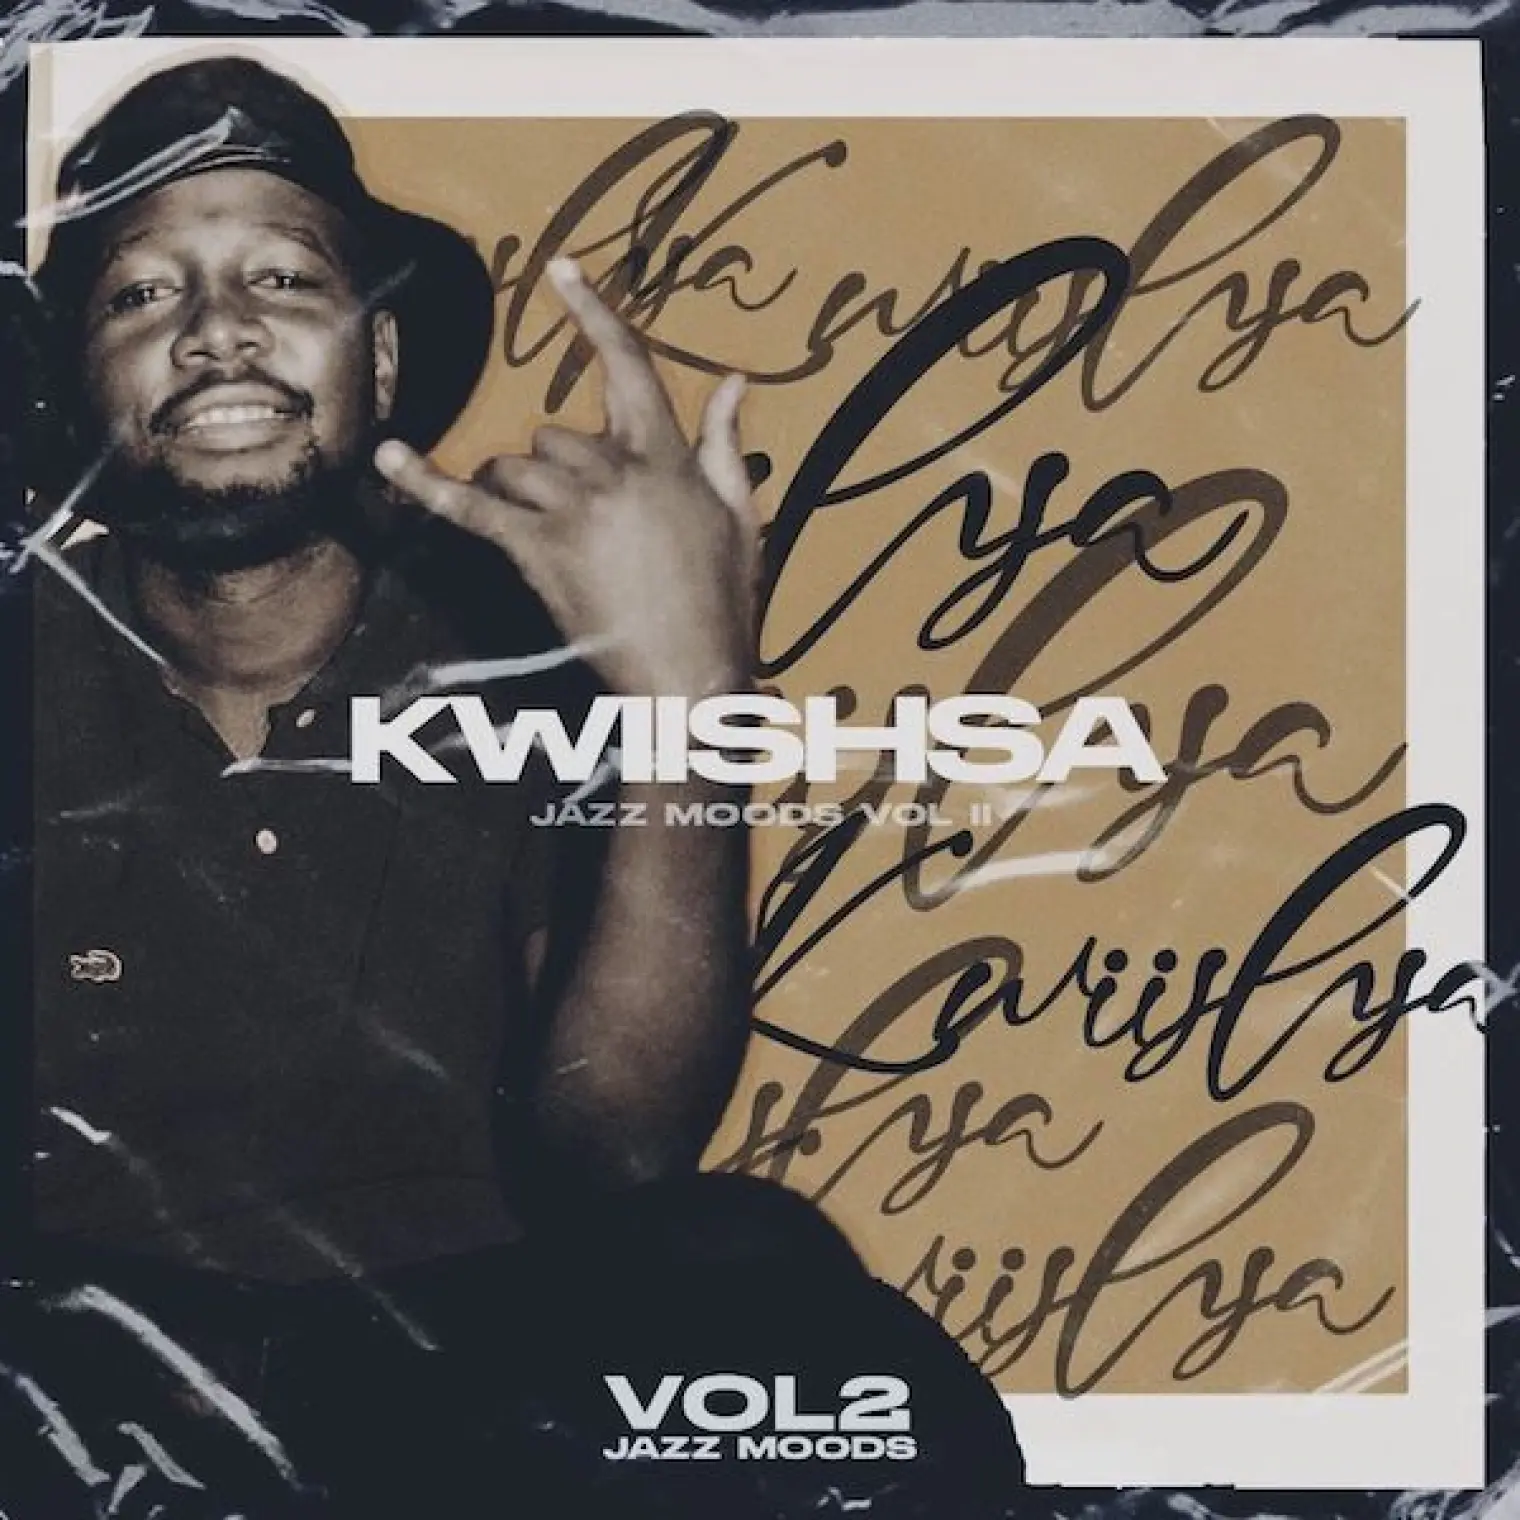 The Jazz Moods Vol 2 EP -  Kwiish SA 